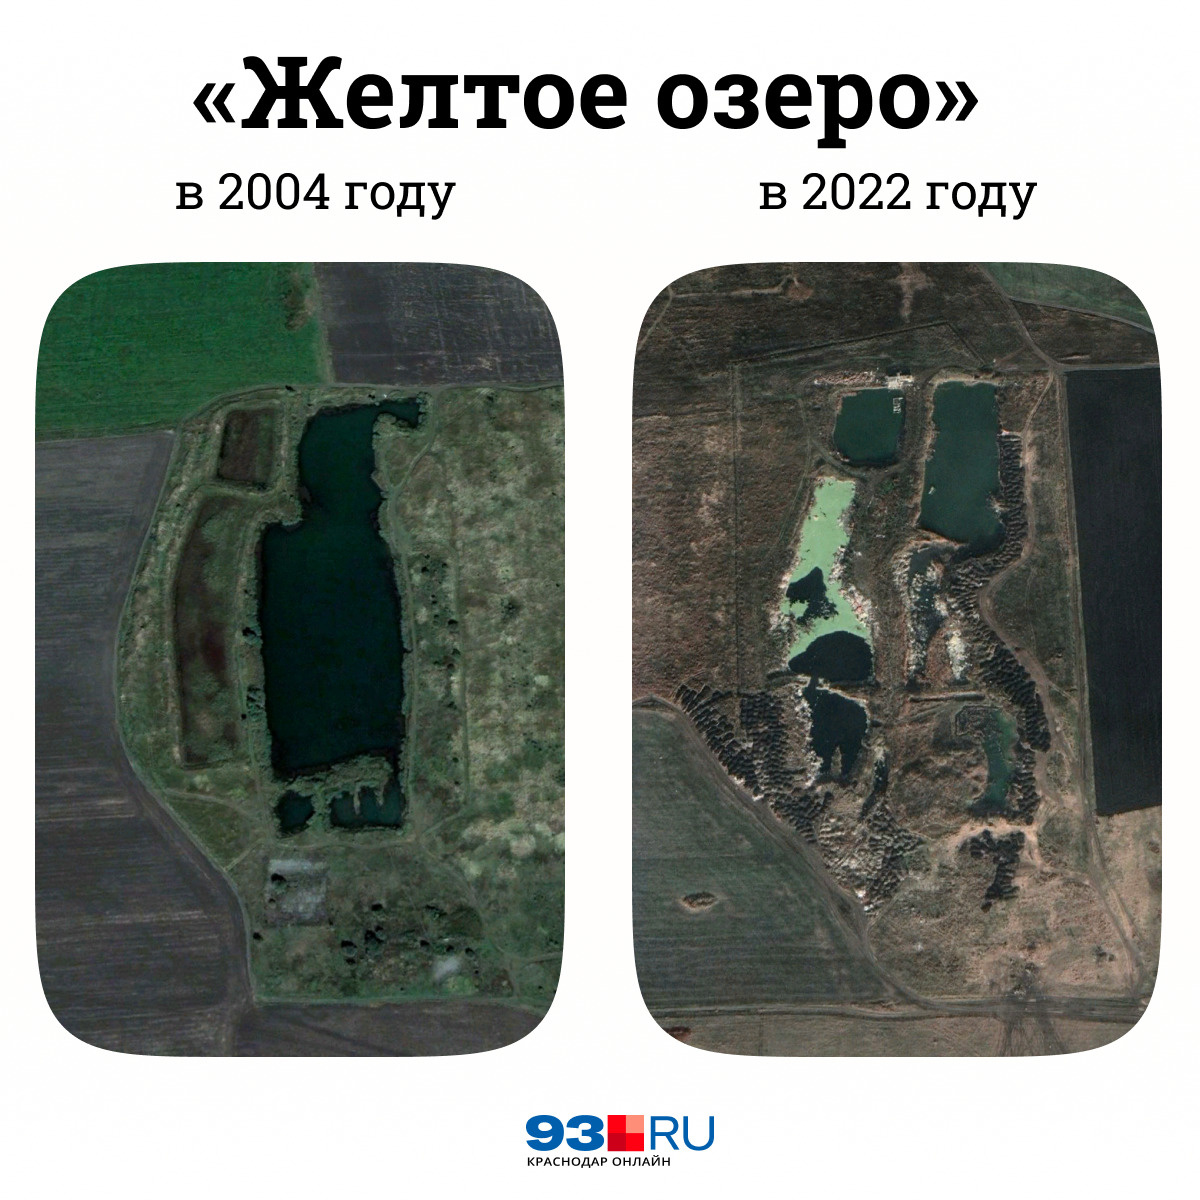 На этих космоснимках наглядно видно, как изменилось озеро с 2004 года